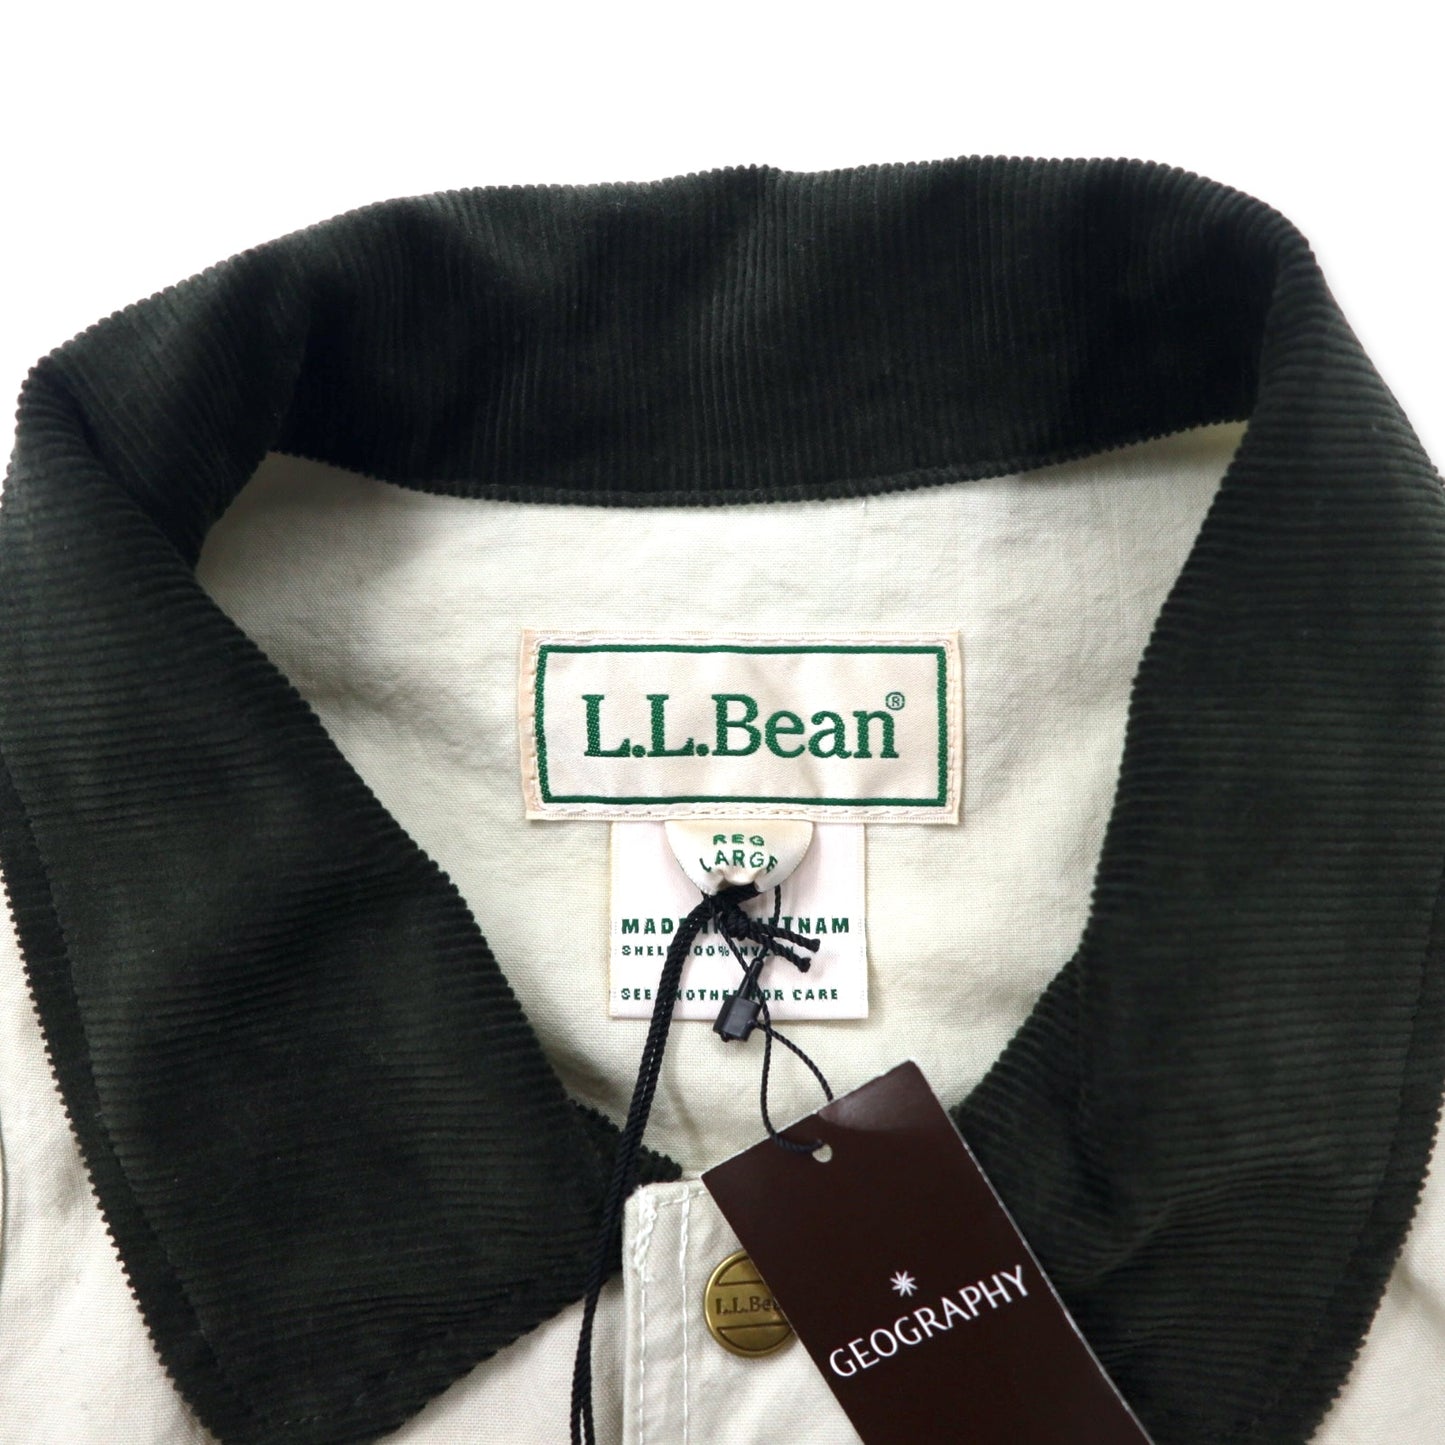 L.L.Bean フィールドコート ハンティングジャケット L クリーム ナイロン 撥水加工 襟コーデュロイ Field Coat 3175-1022 未使用品